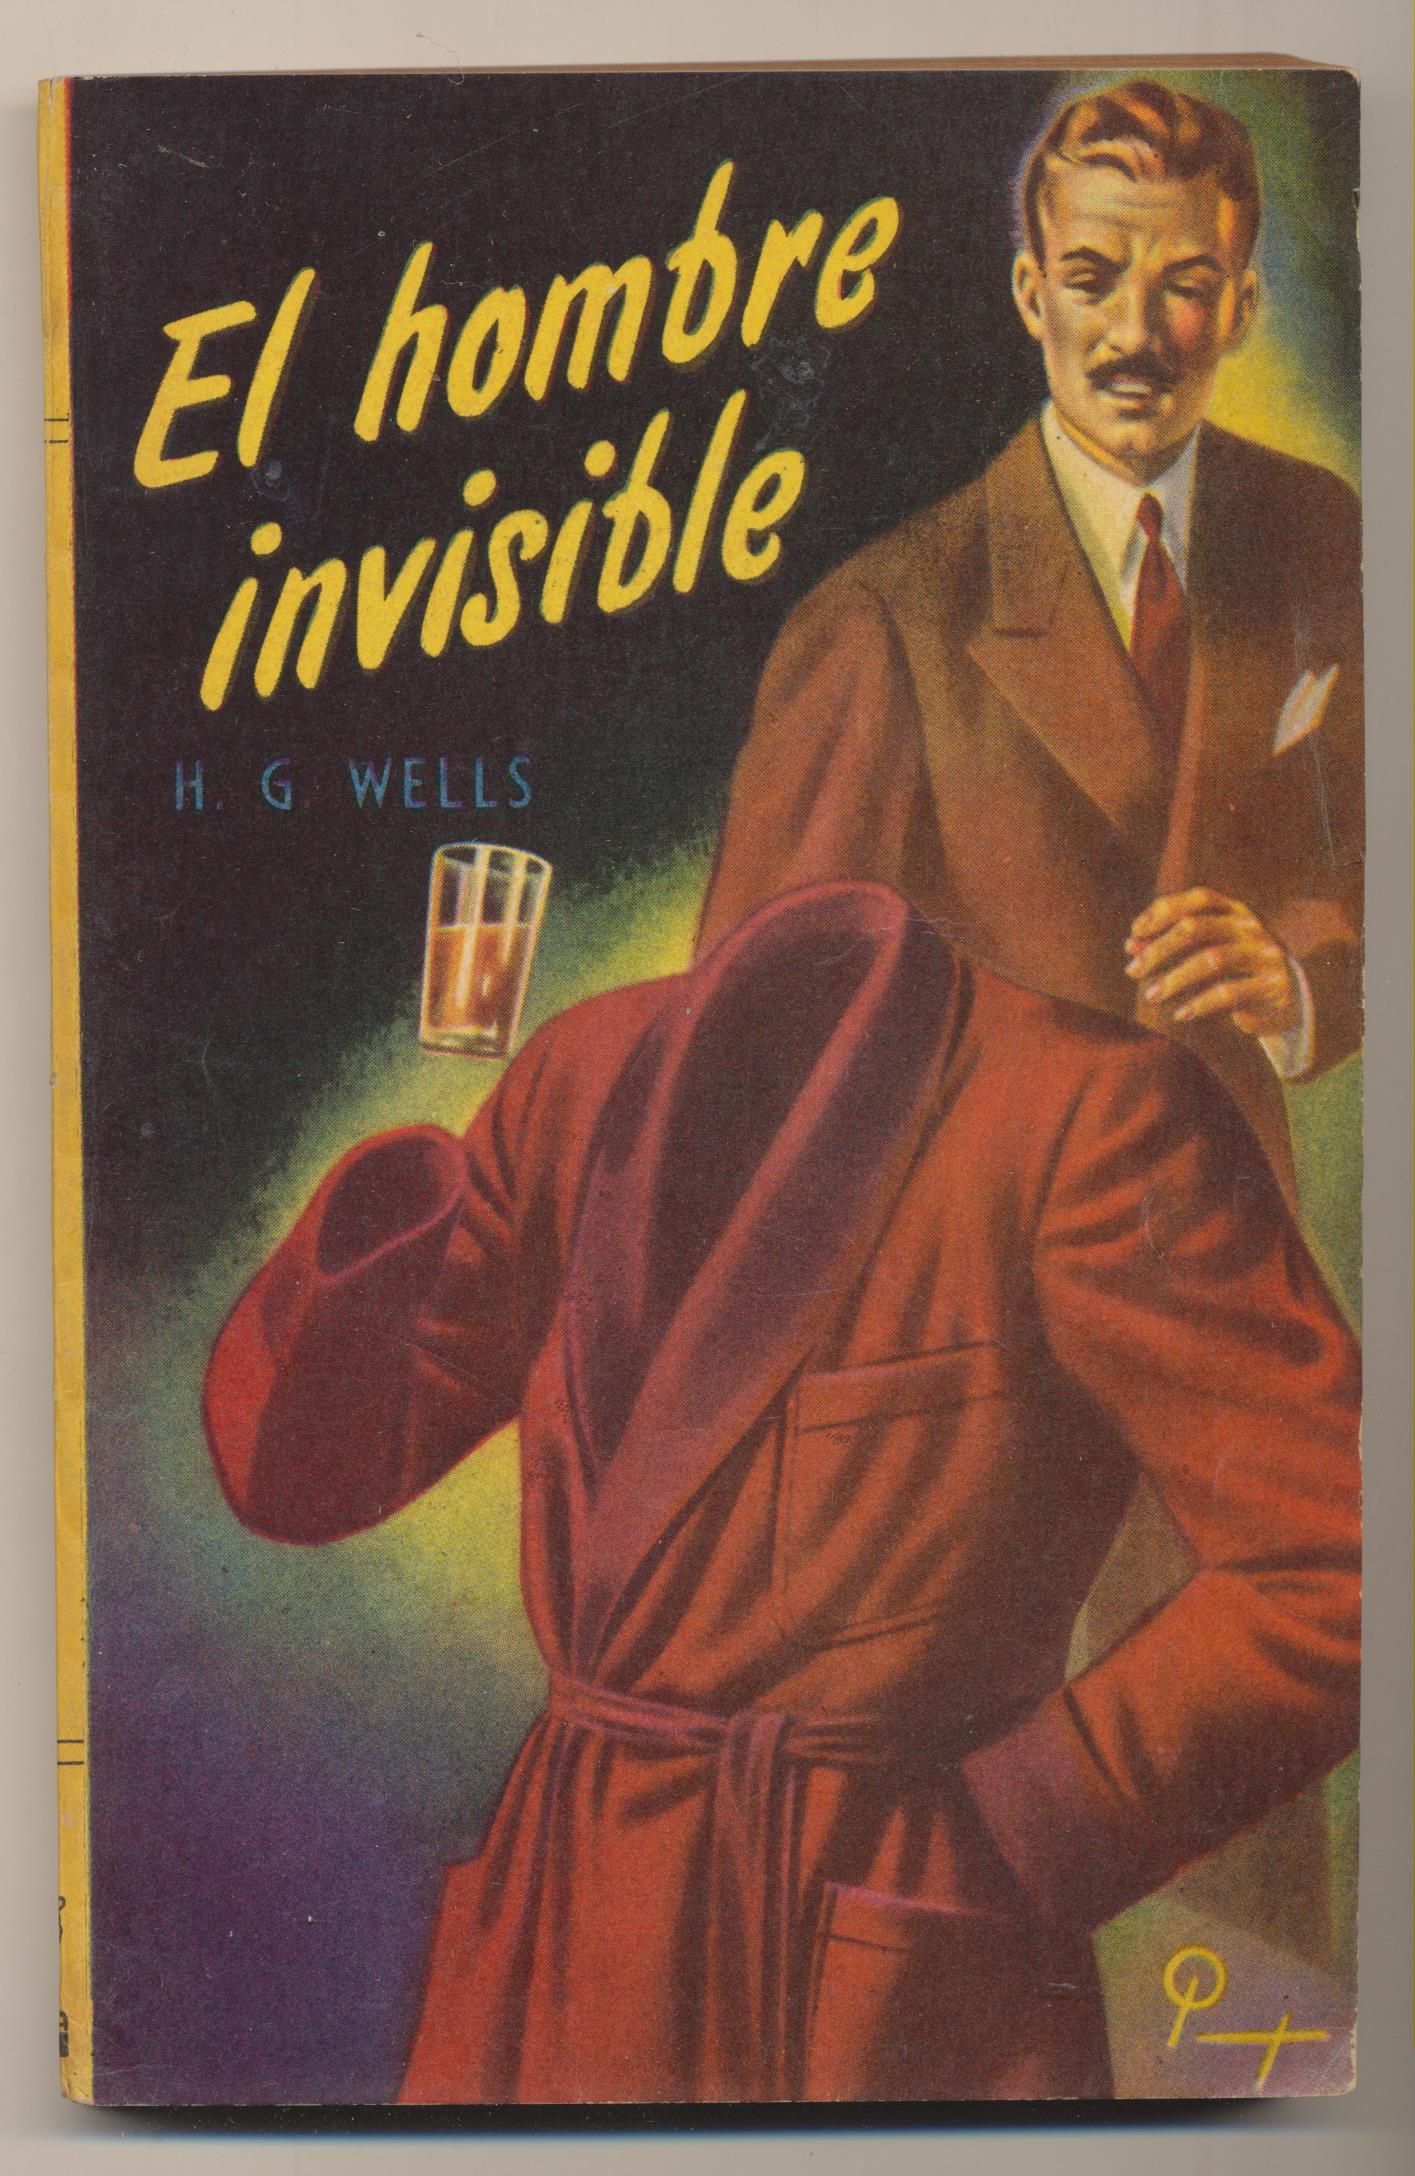 H. G. Wells. El Hombre Invisible. Colección Centauro nº 10. Acme Buenos Aires 1952